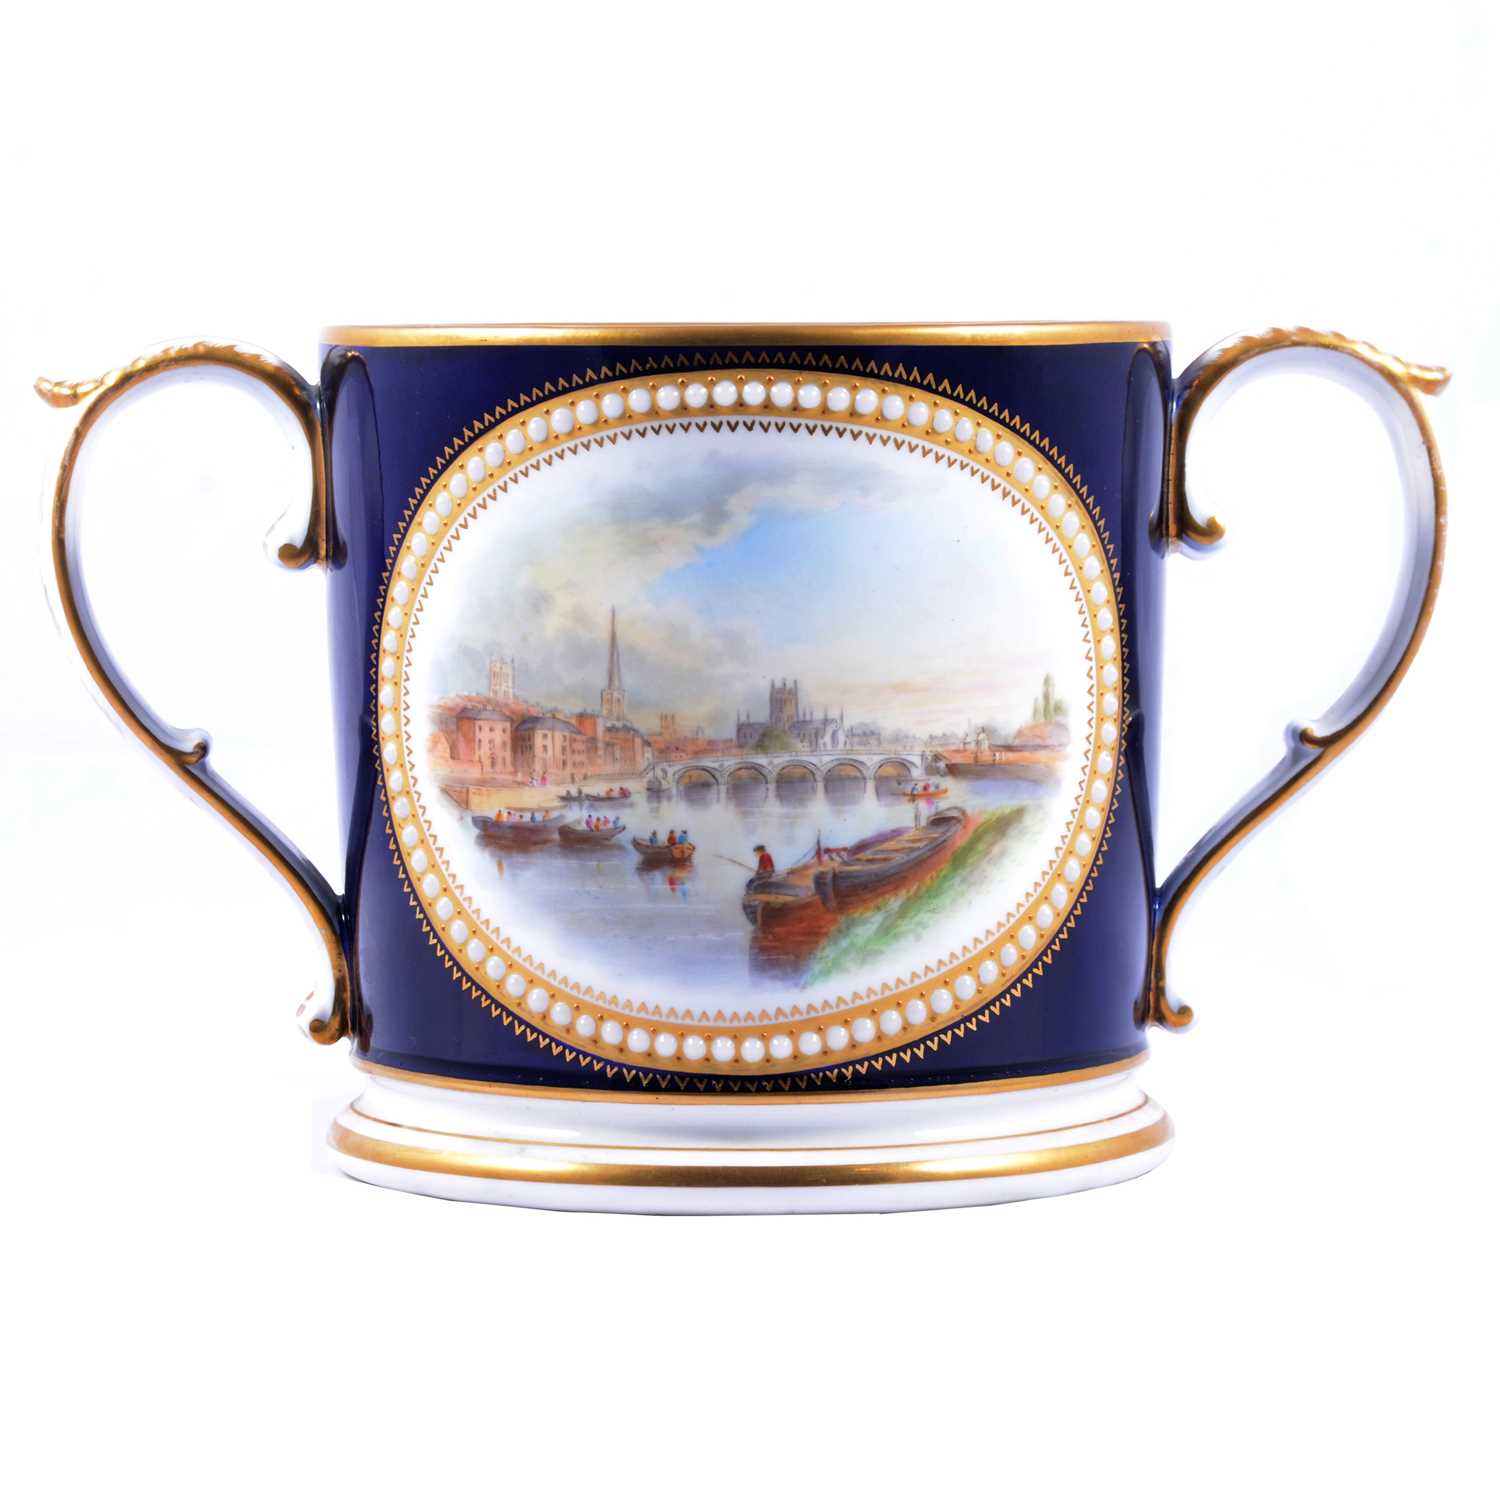 Grainger & Co. Worcester Loving cup,